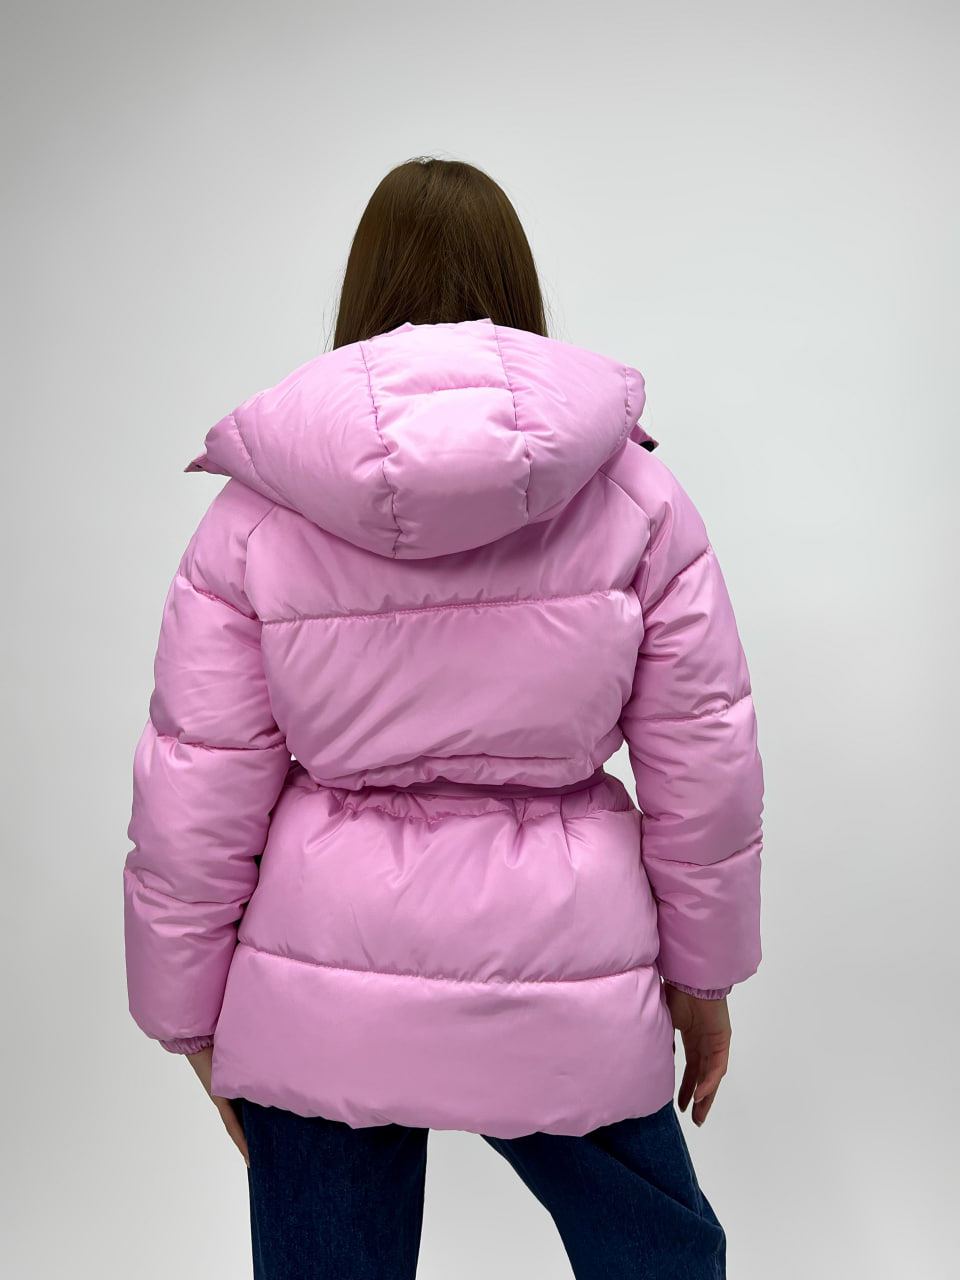 Жіноча зимова куртка-пуховик Reload Elly рожевий/ Зимовий пуховик оверсайз стильний теплий - Фото 7